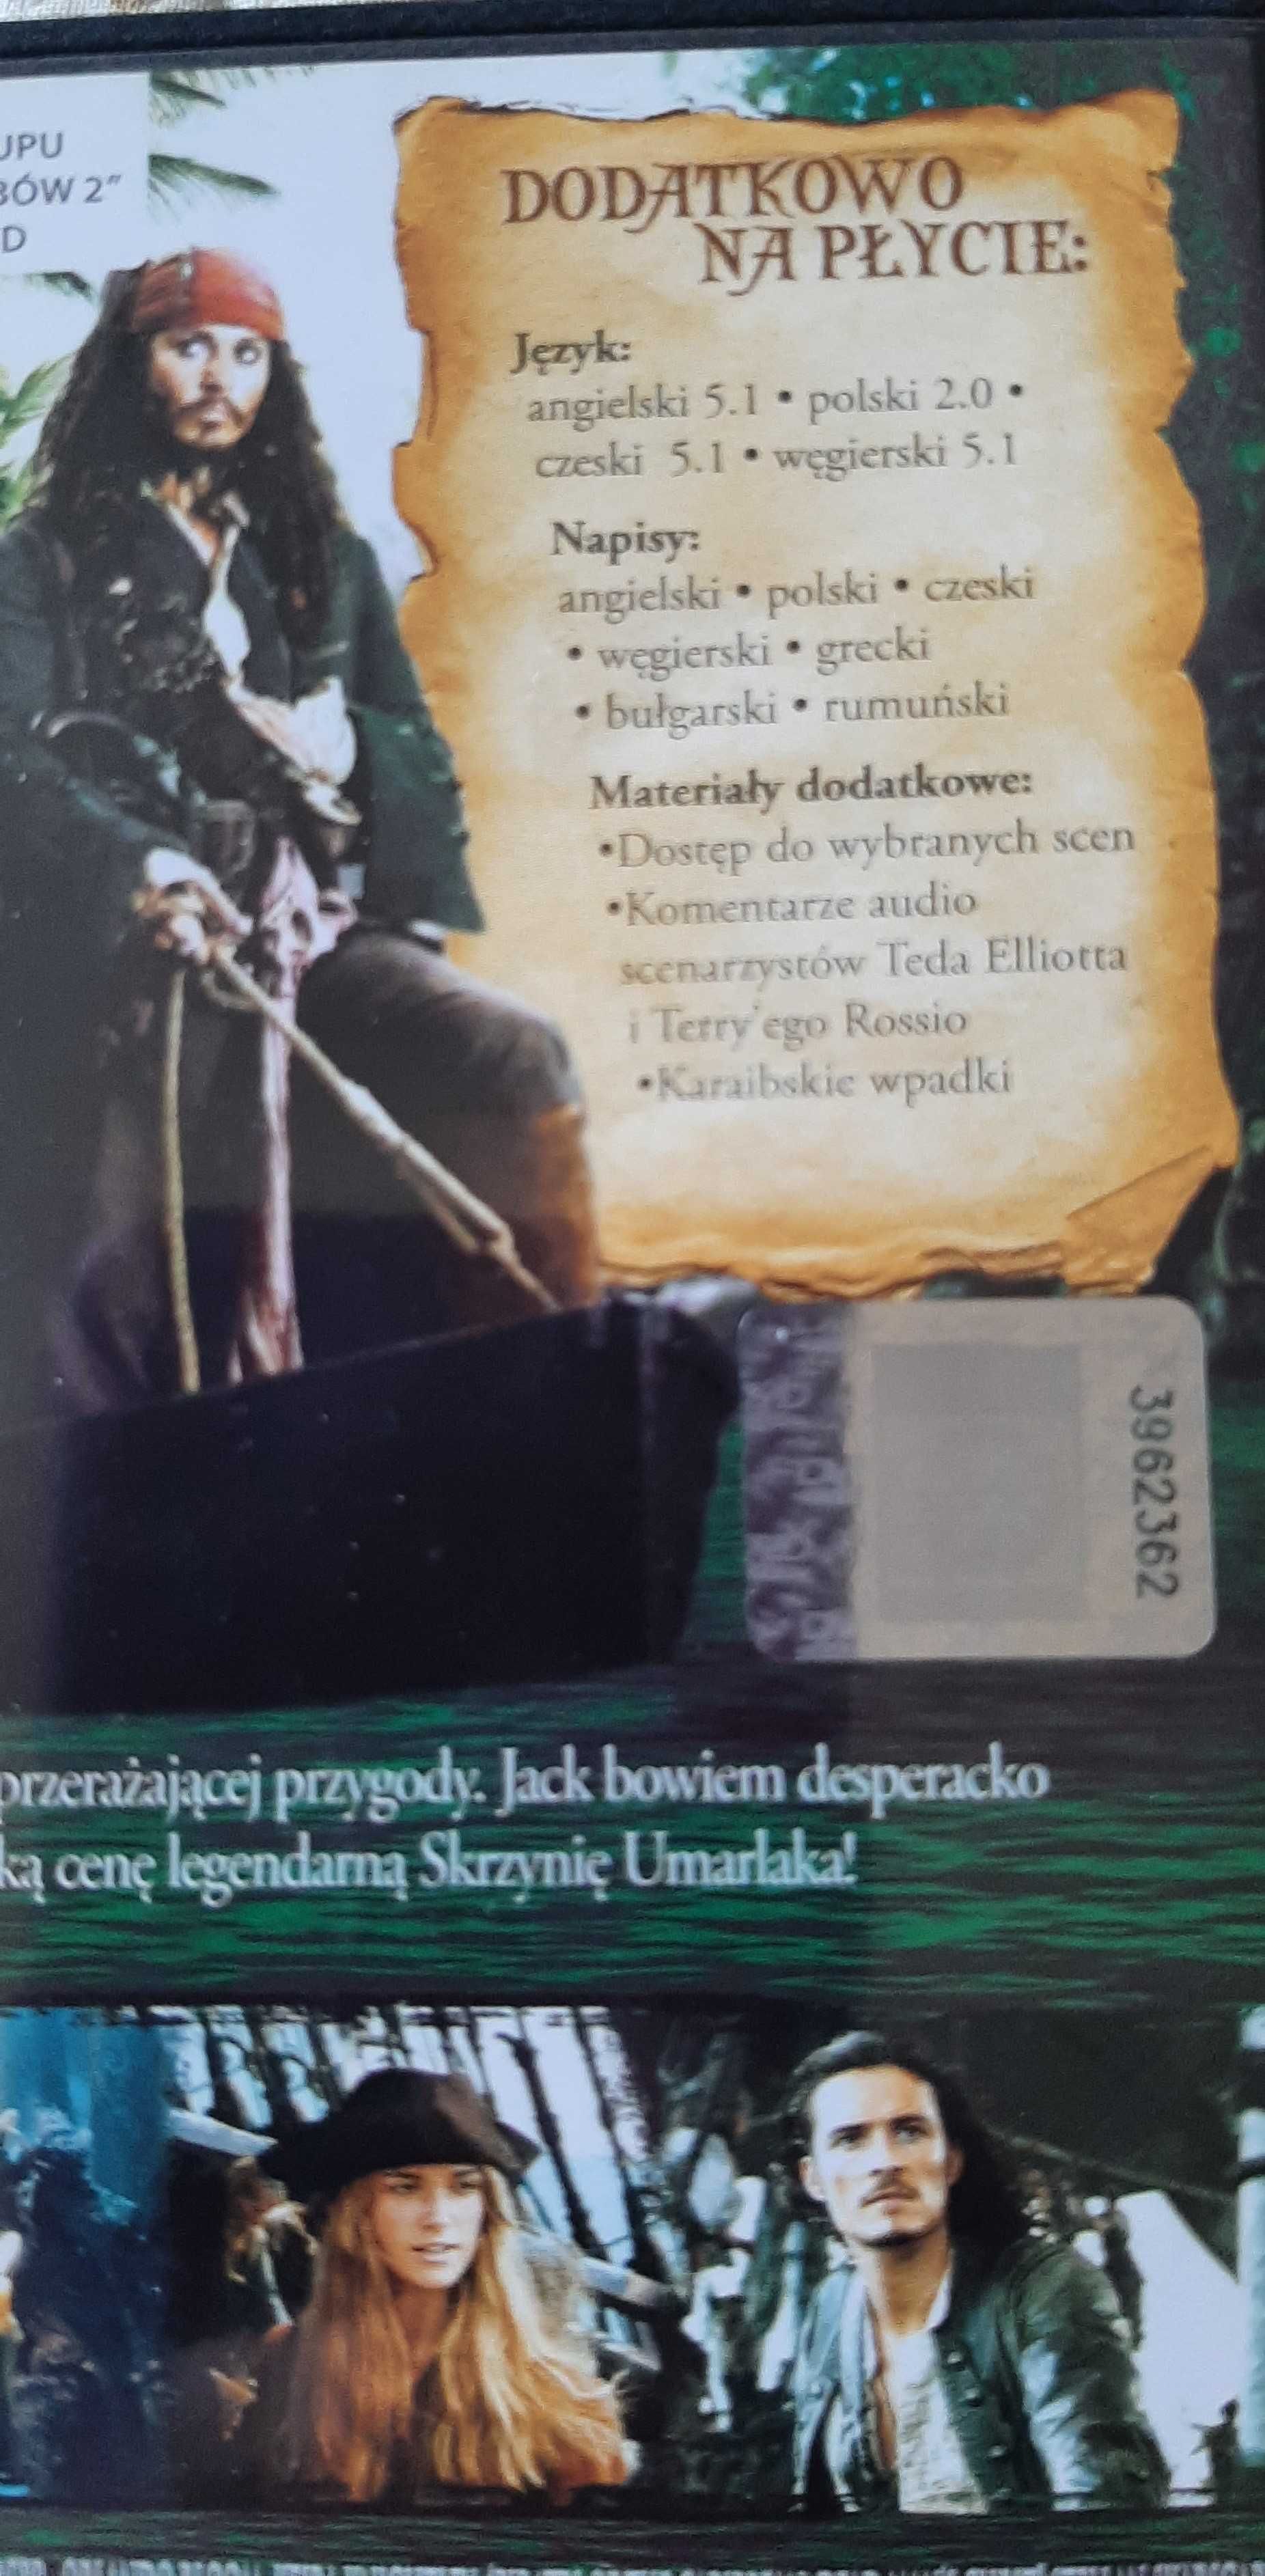 Film Piraci z Karaibów, Skrzynia umarlaka – DVD edycja Polska